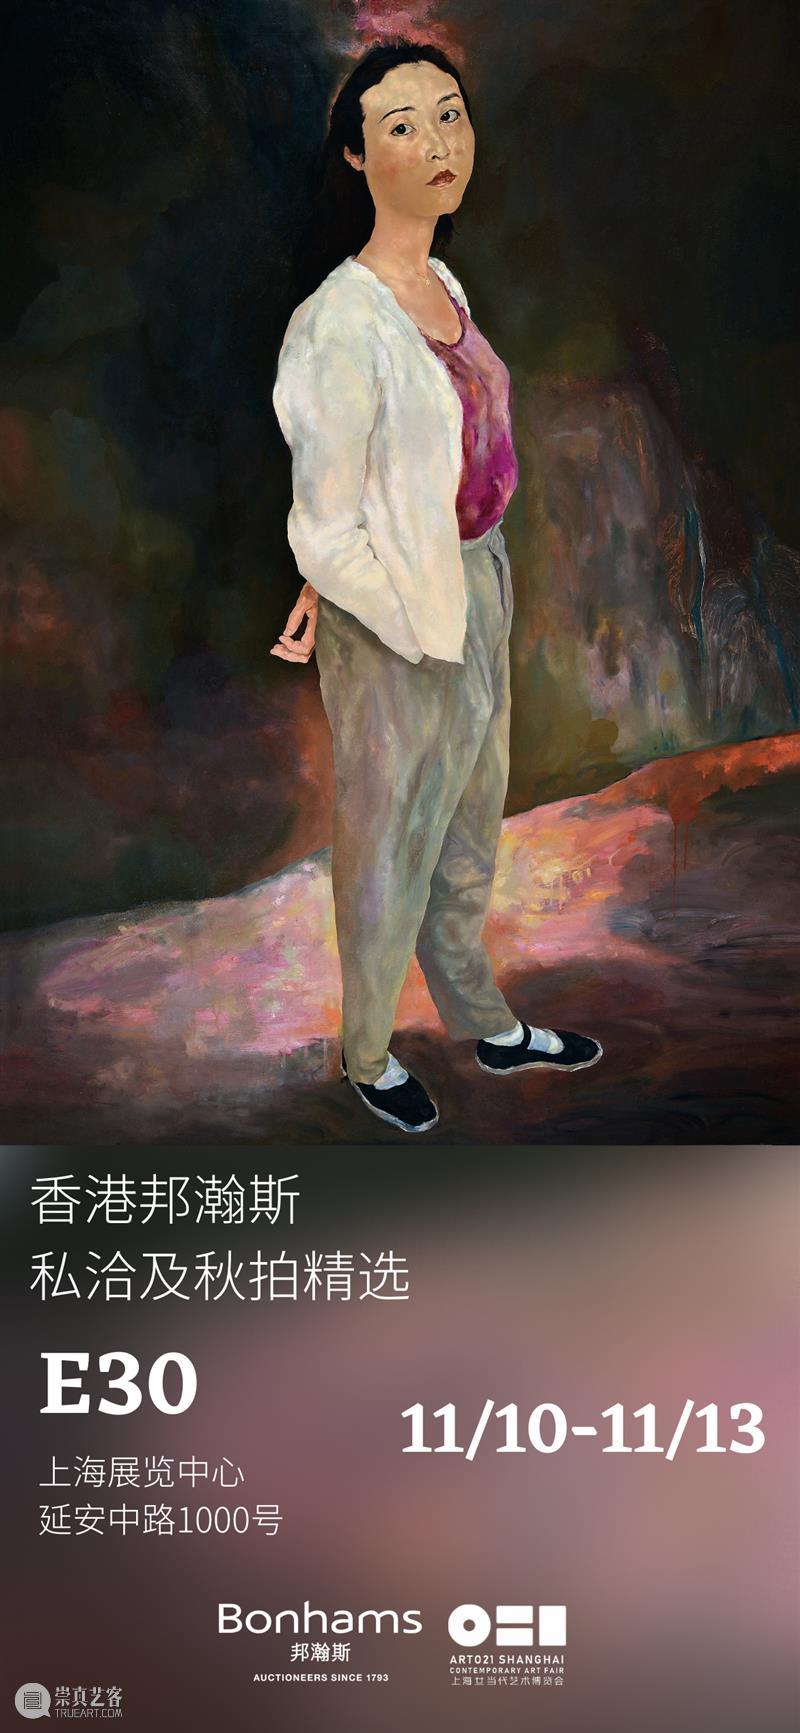 香港邦瀚斯 | 佳作荟萃ART021上海当代艺术博览会 | 展位E30 崇真艺客